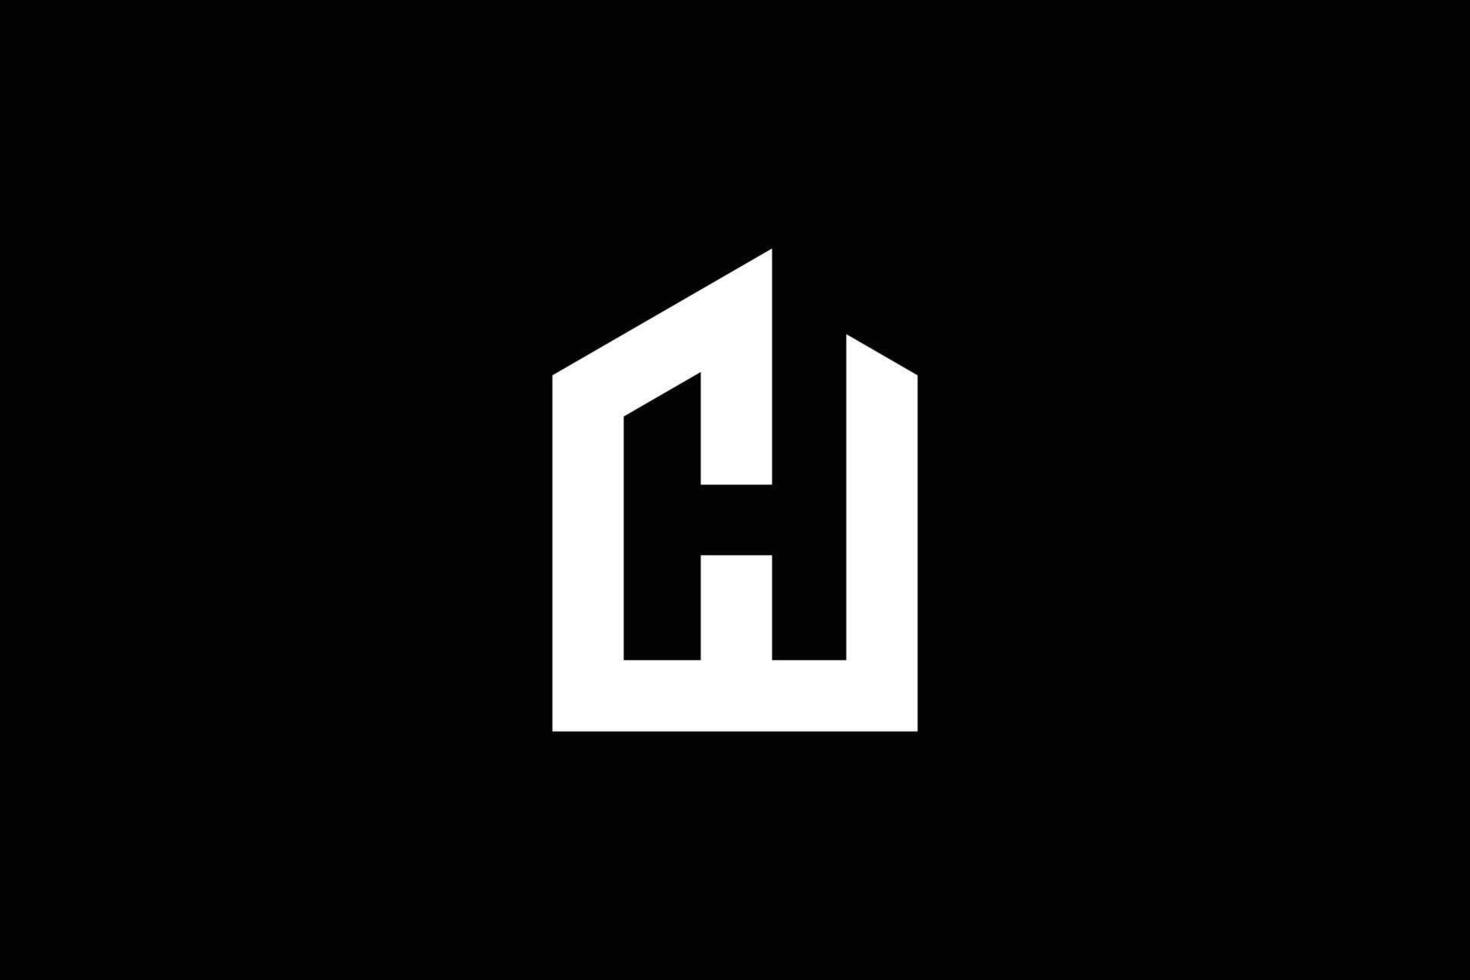 brief ch huis of echt landgoed logo ontwerp sjabloon vector